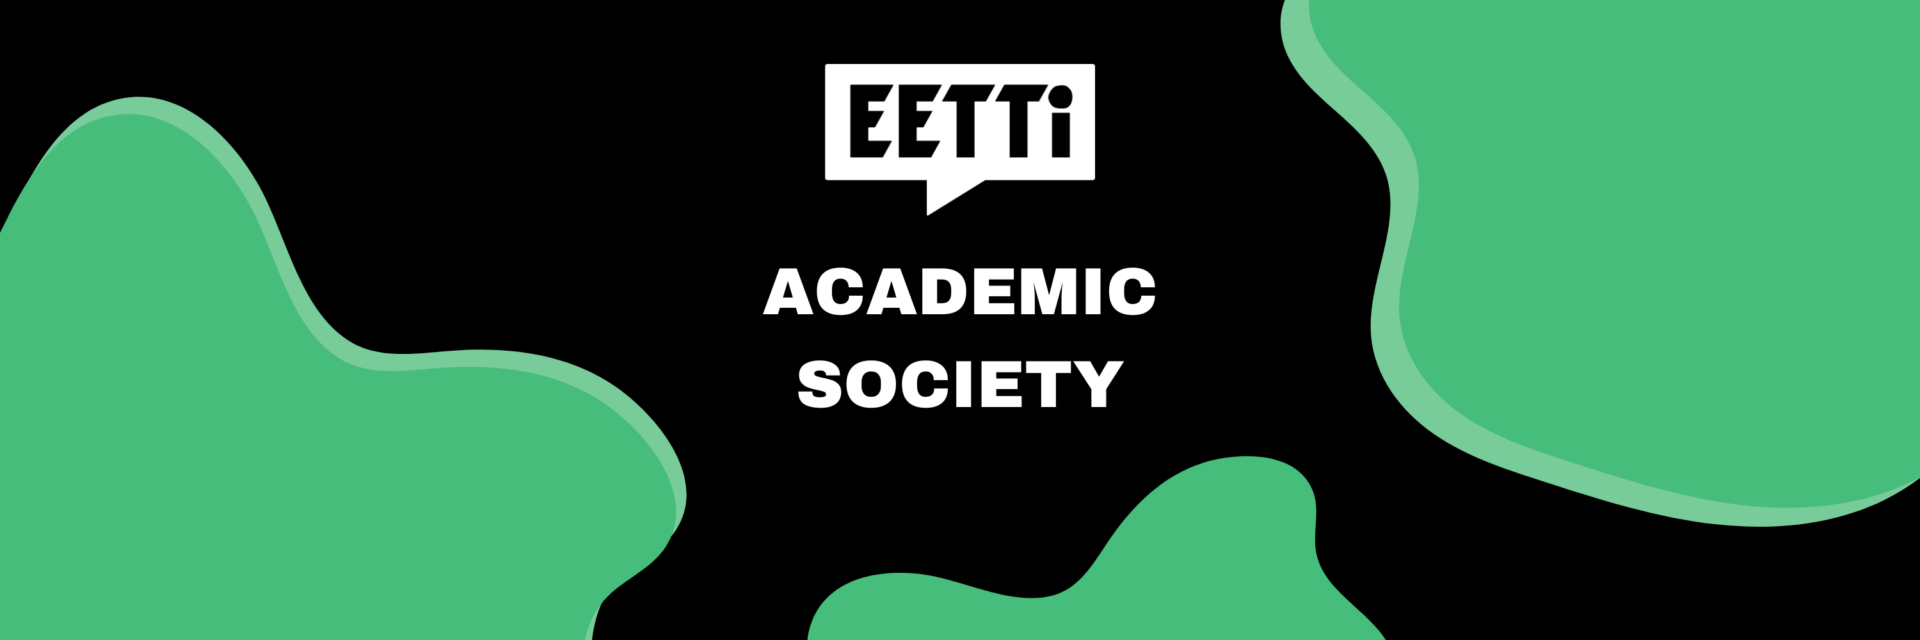 Eetti Academic Society